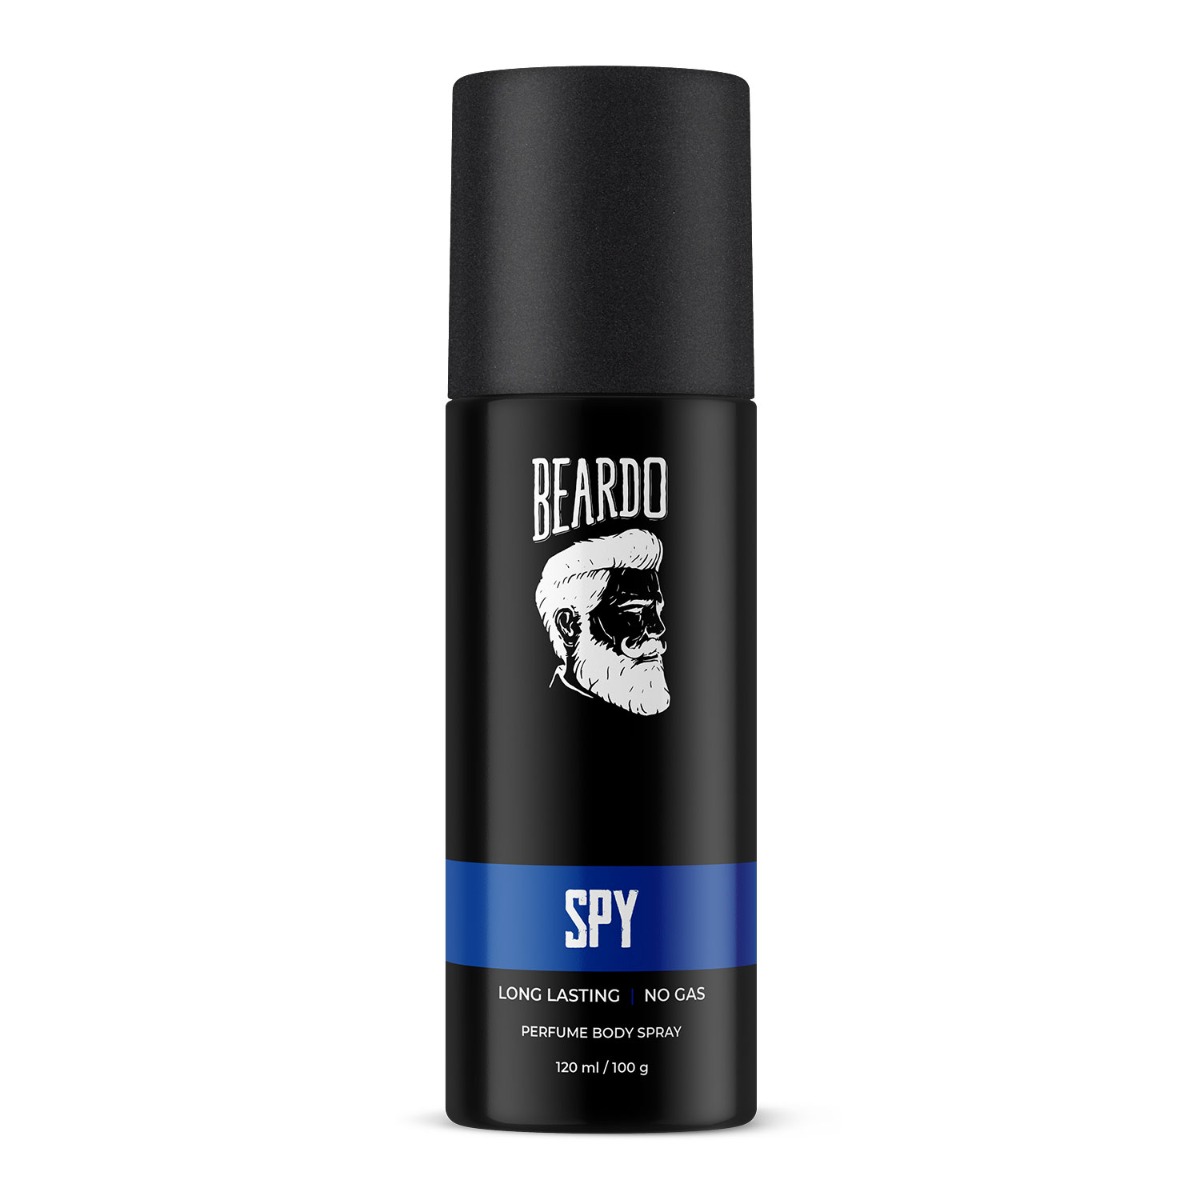 Beardo SPY Perfume Body Spray, 120ml